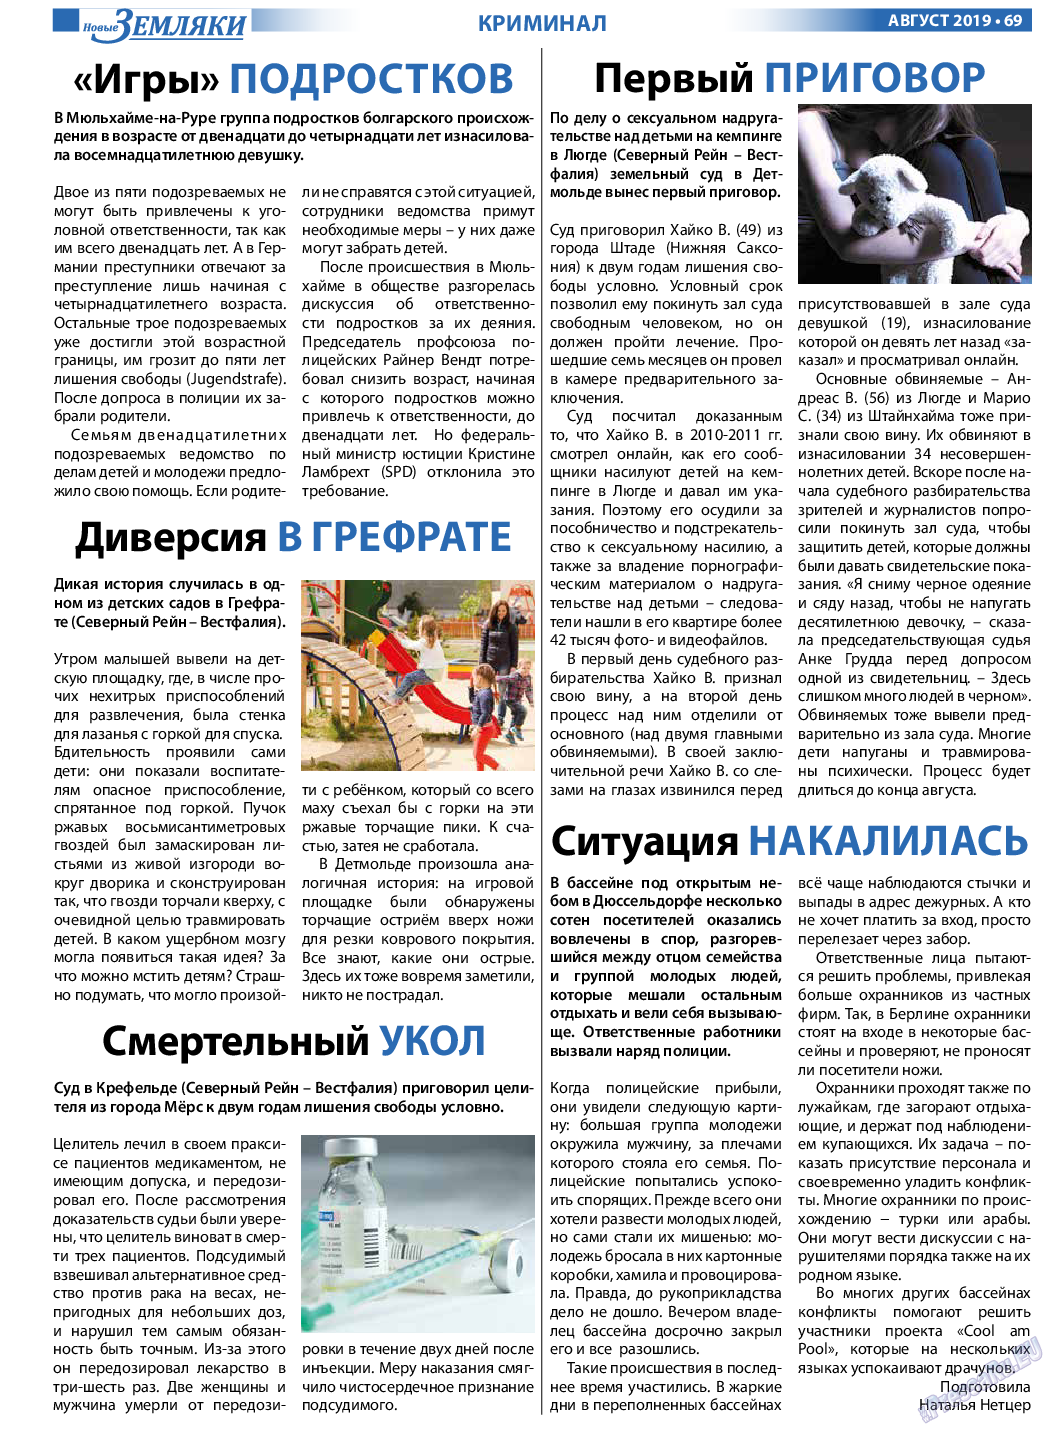 Новые Земляки, газета. 2019 №8 стр.69